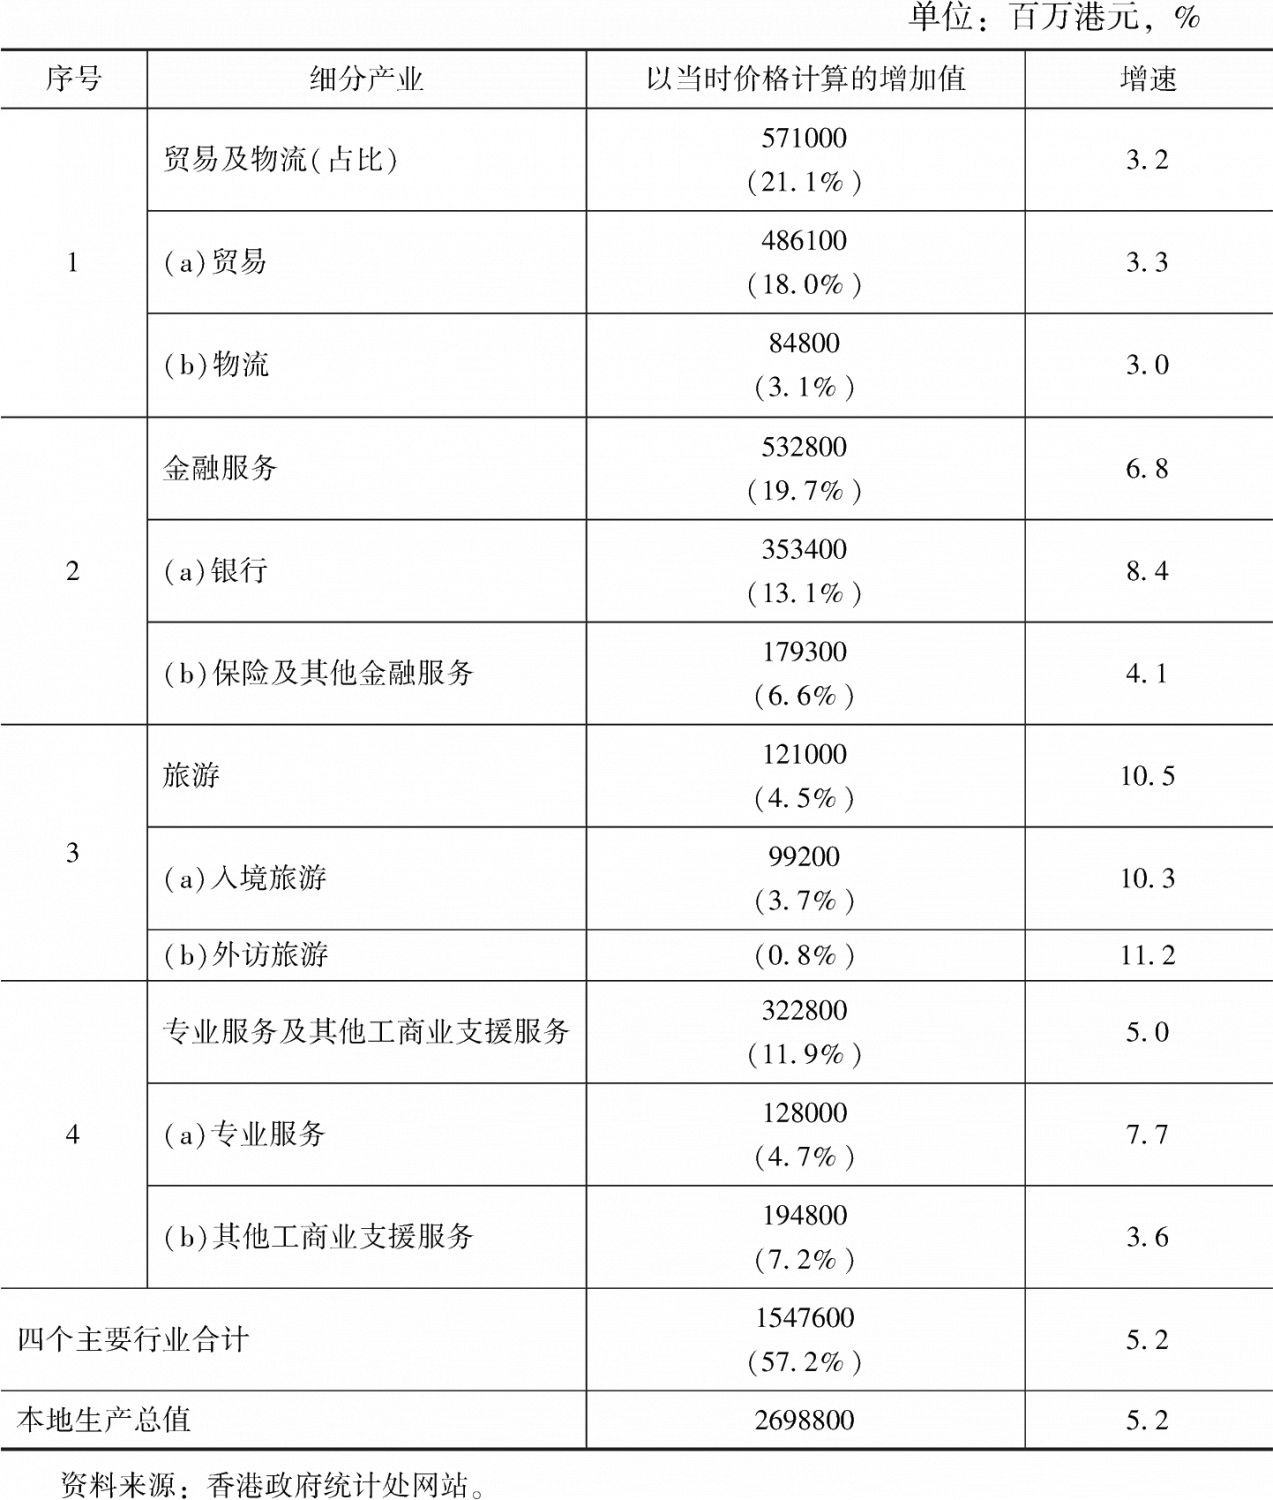 表1 2018年香港四大行业的增加价值